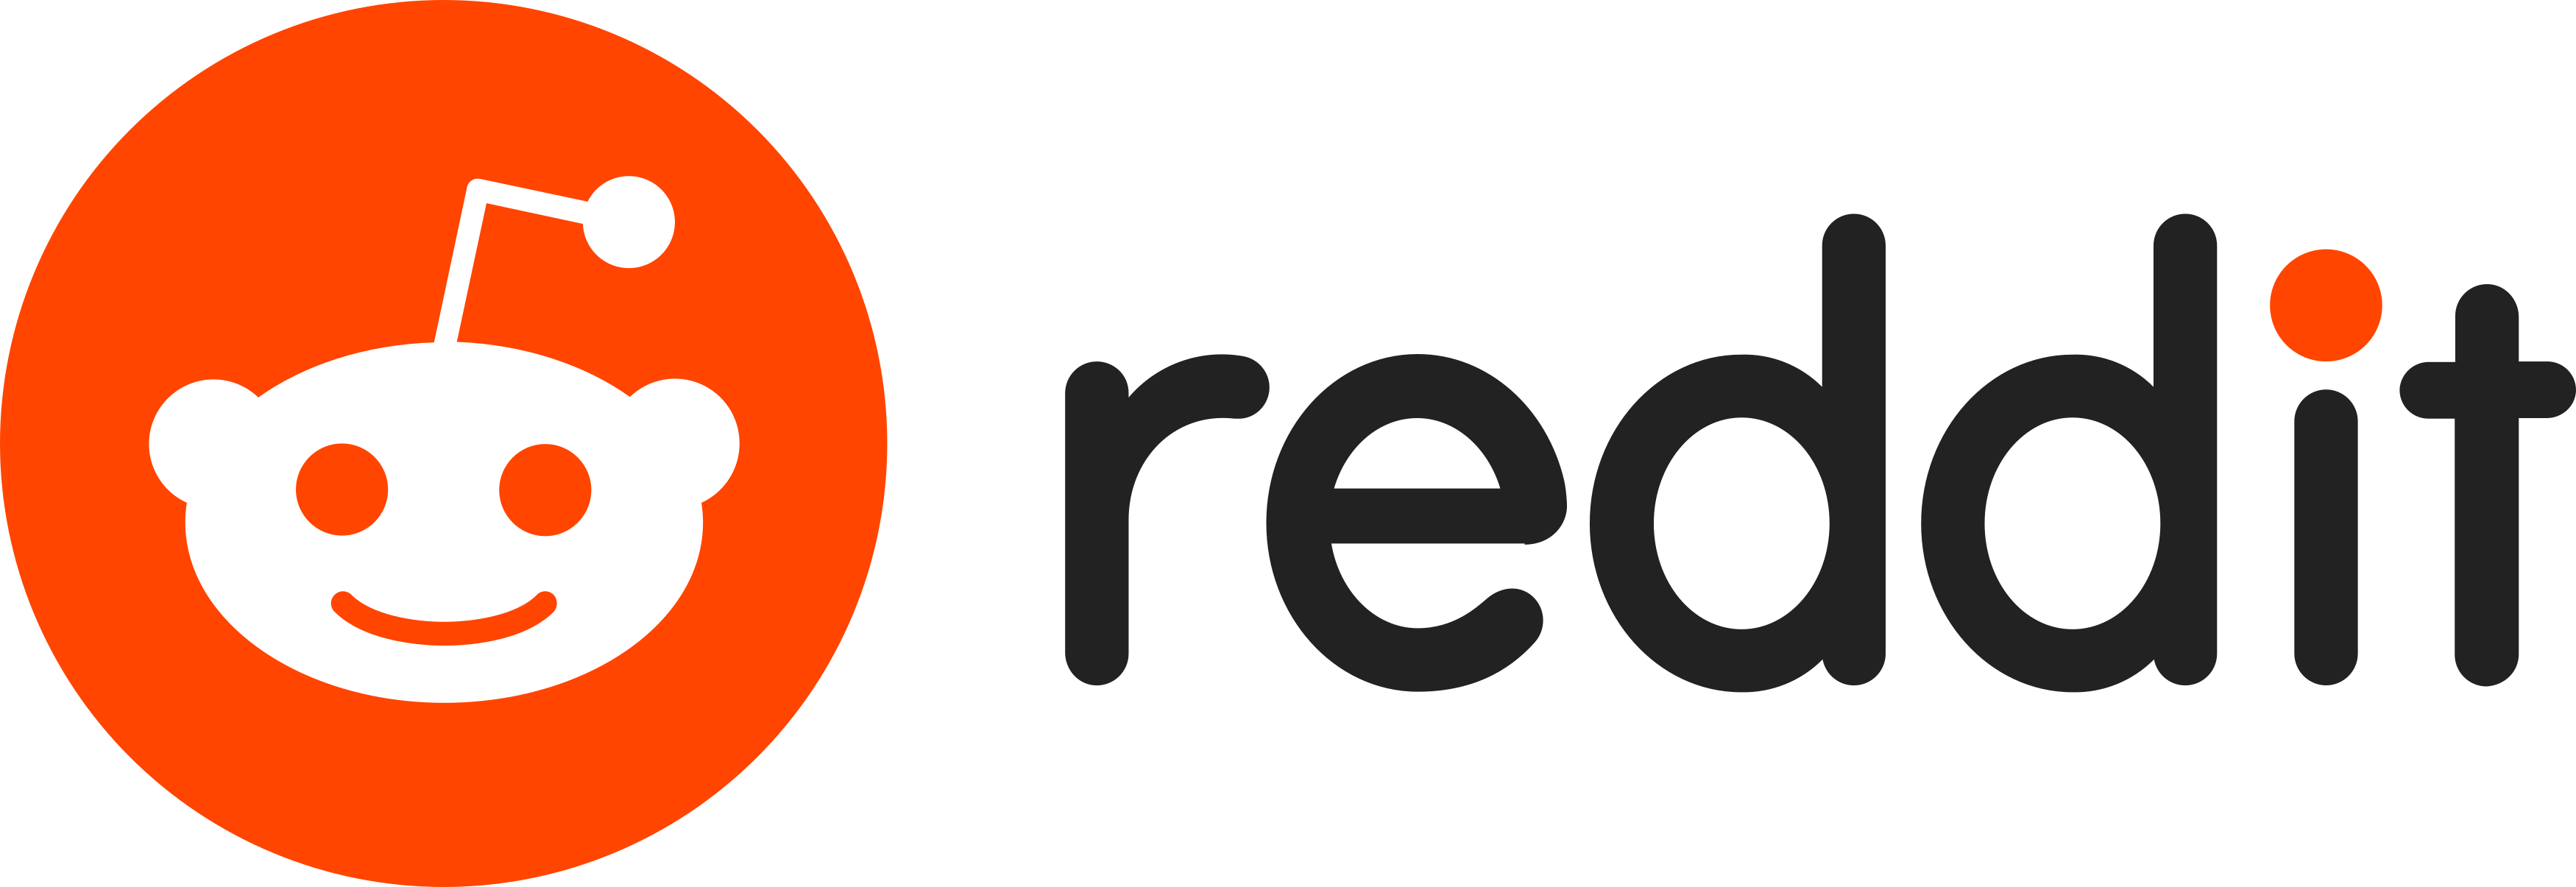 Reddit Logo   Png And Vector   Logo Download - Reddit, Transparent background PNG HD thumbnail